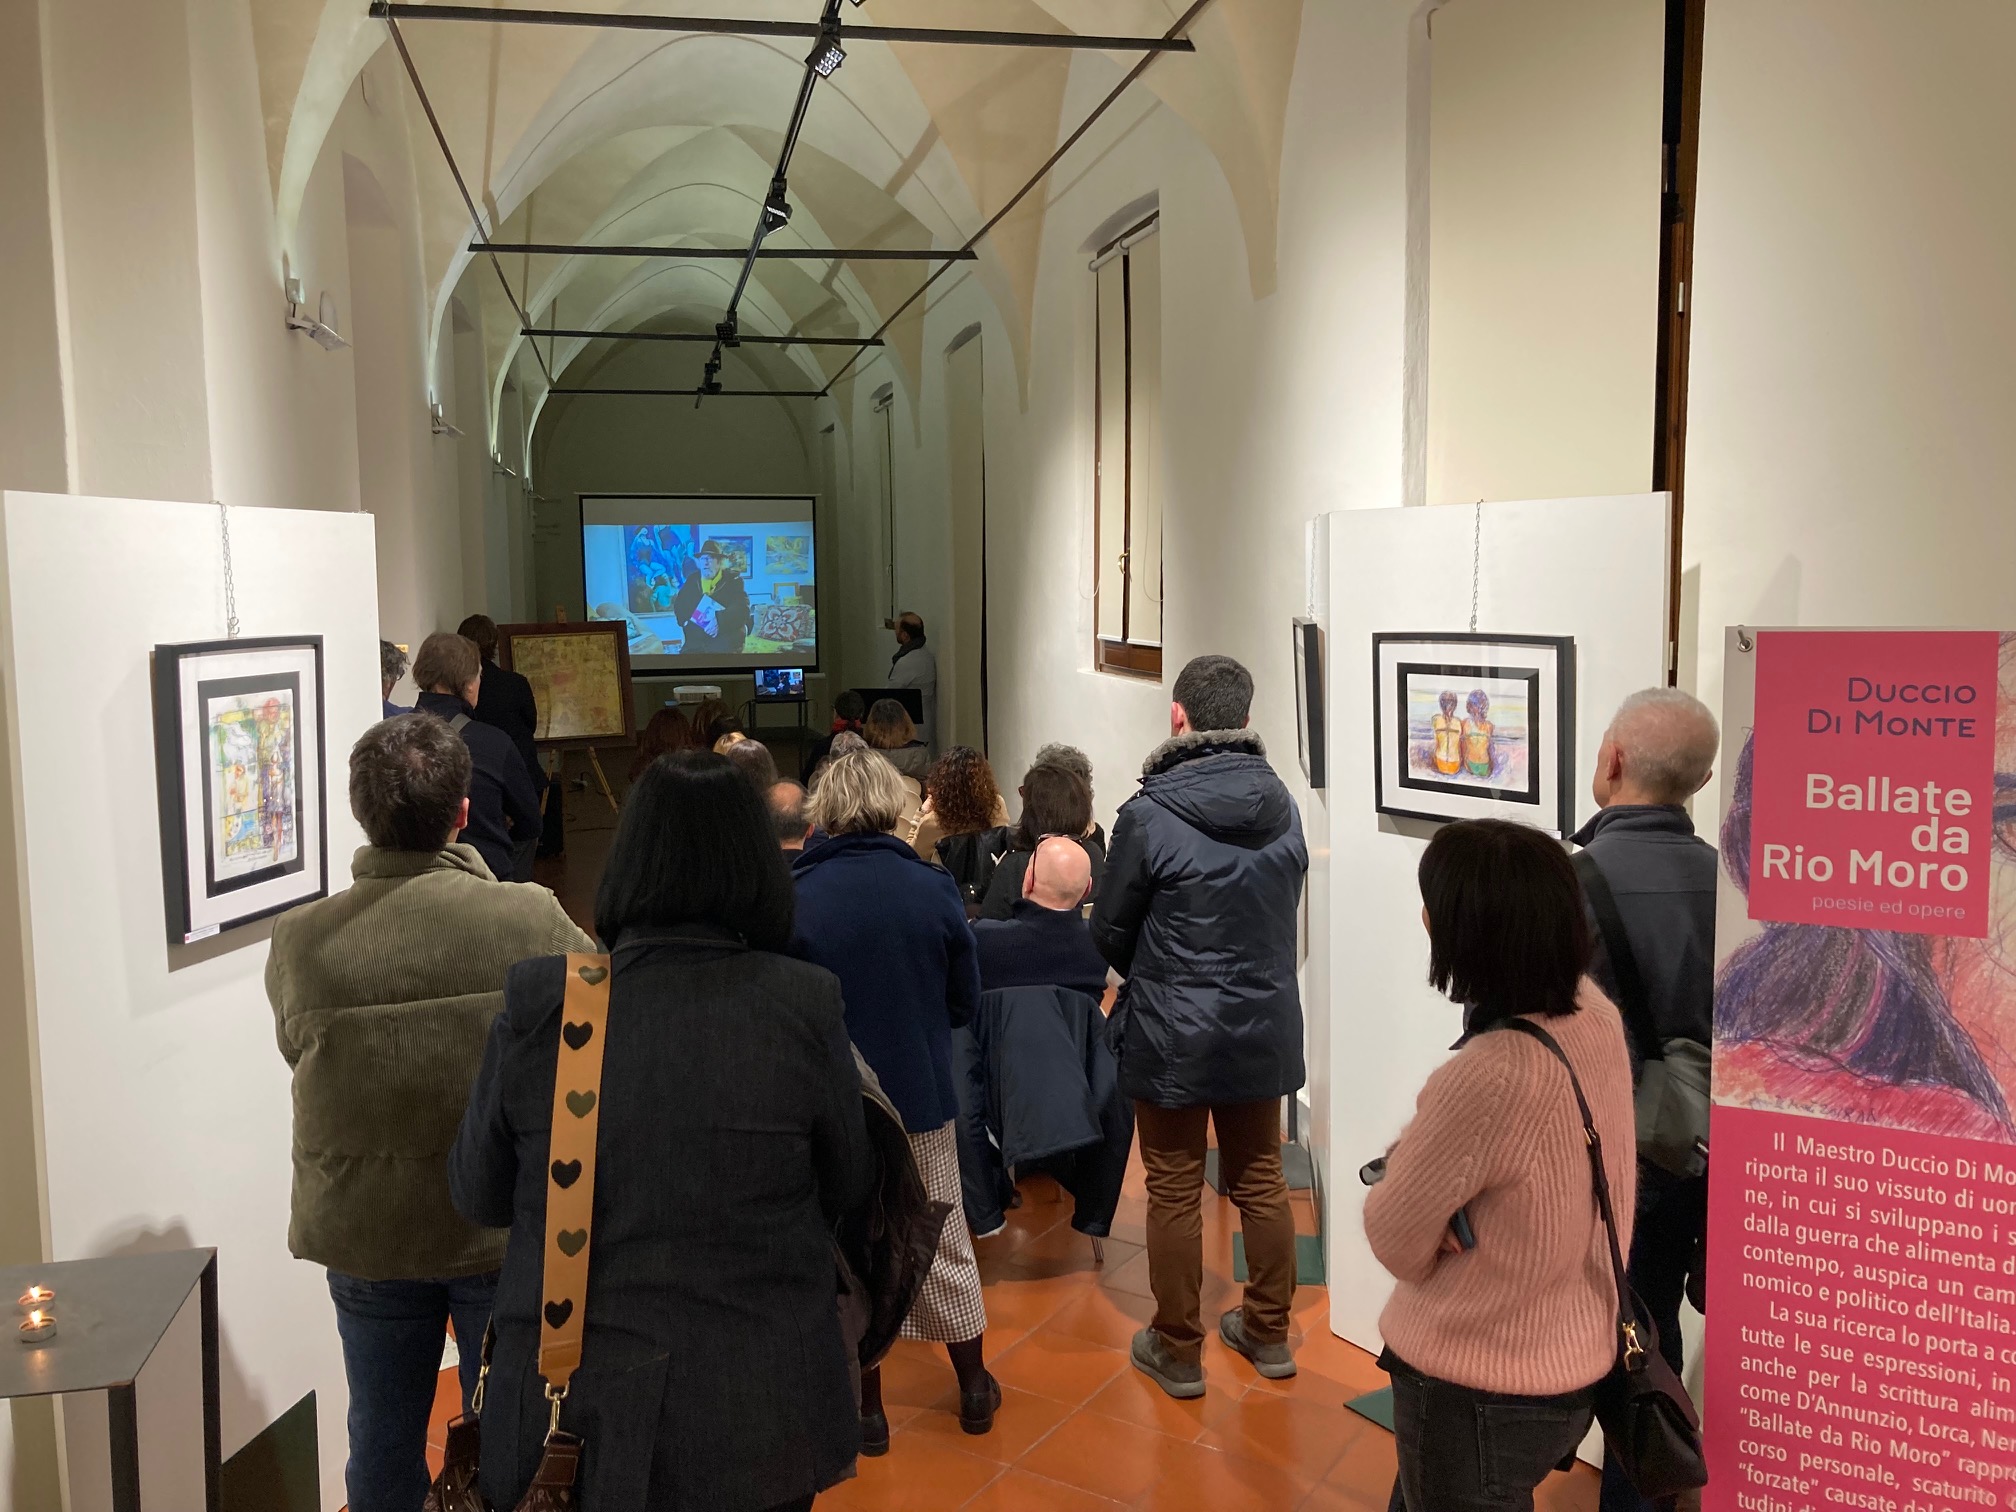 San Domenico, inaugurata con successo la mostra “Ballate da Rio Moro” del Maestro Duccio Di Monte